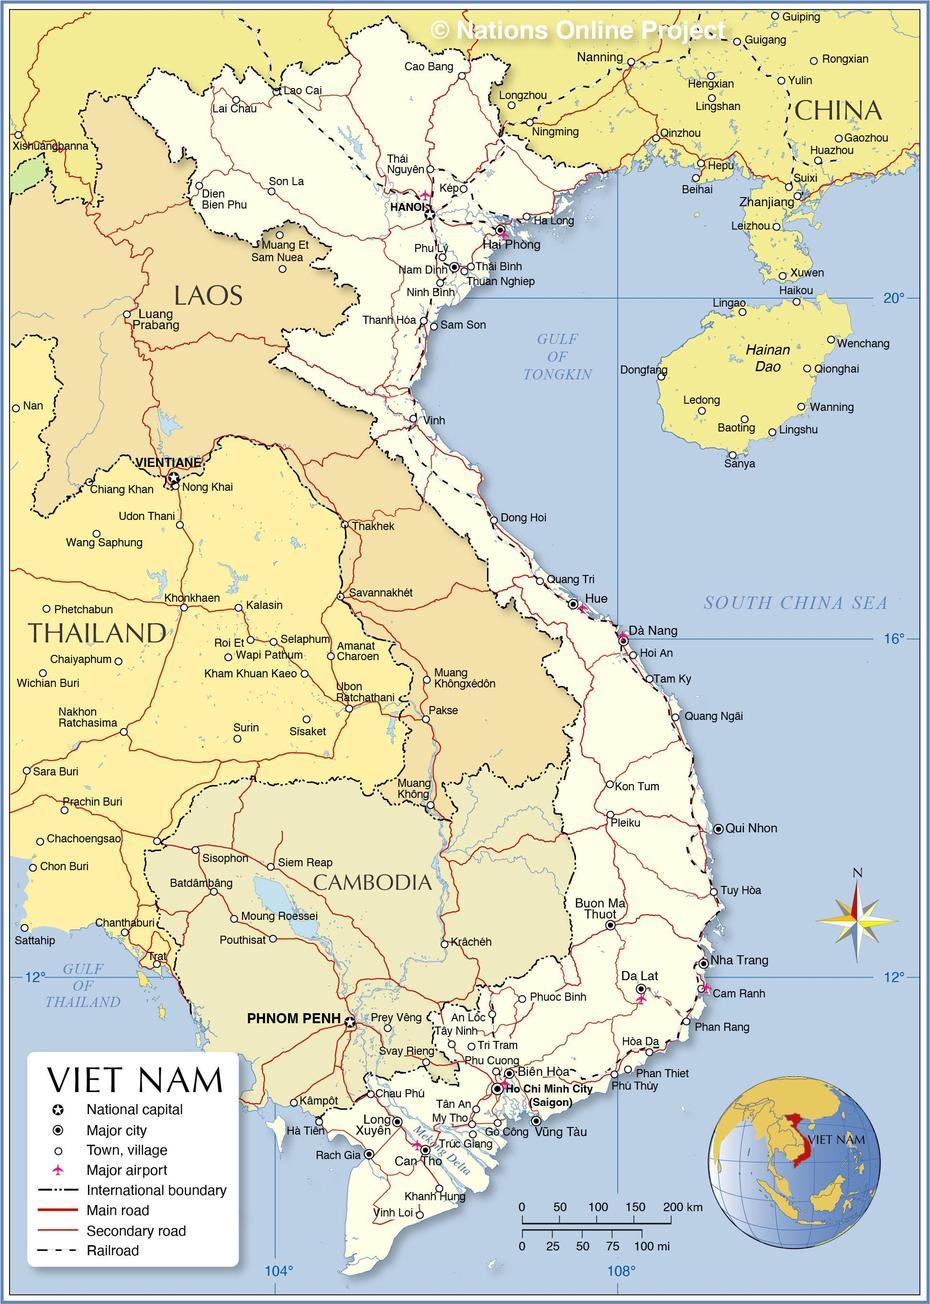 Dong  Nai, Du  Lịch, Table Rock, Bửu Long, Vietnam